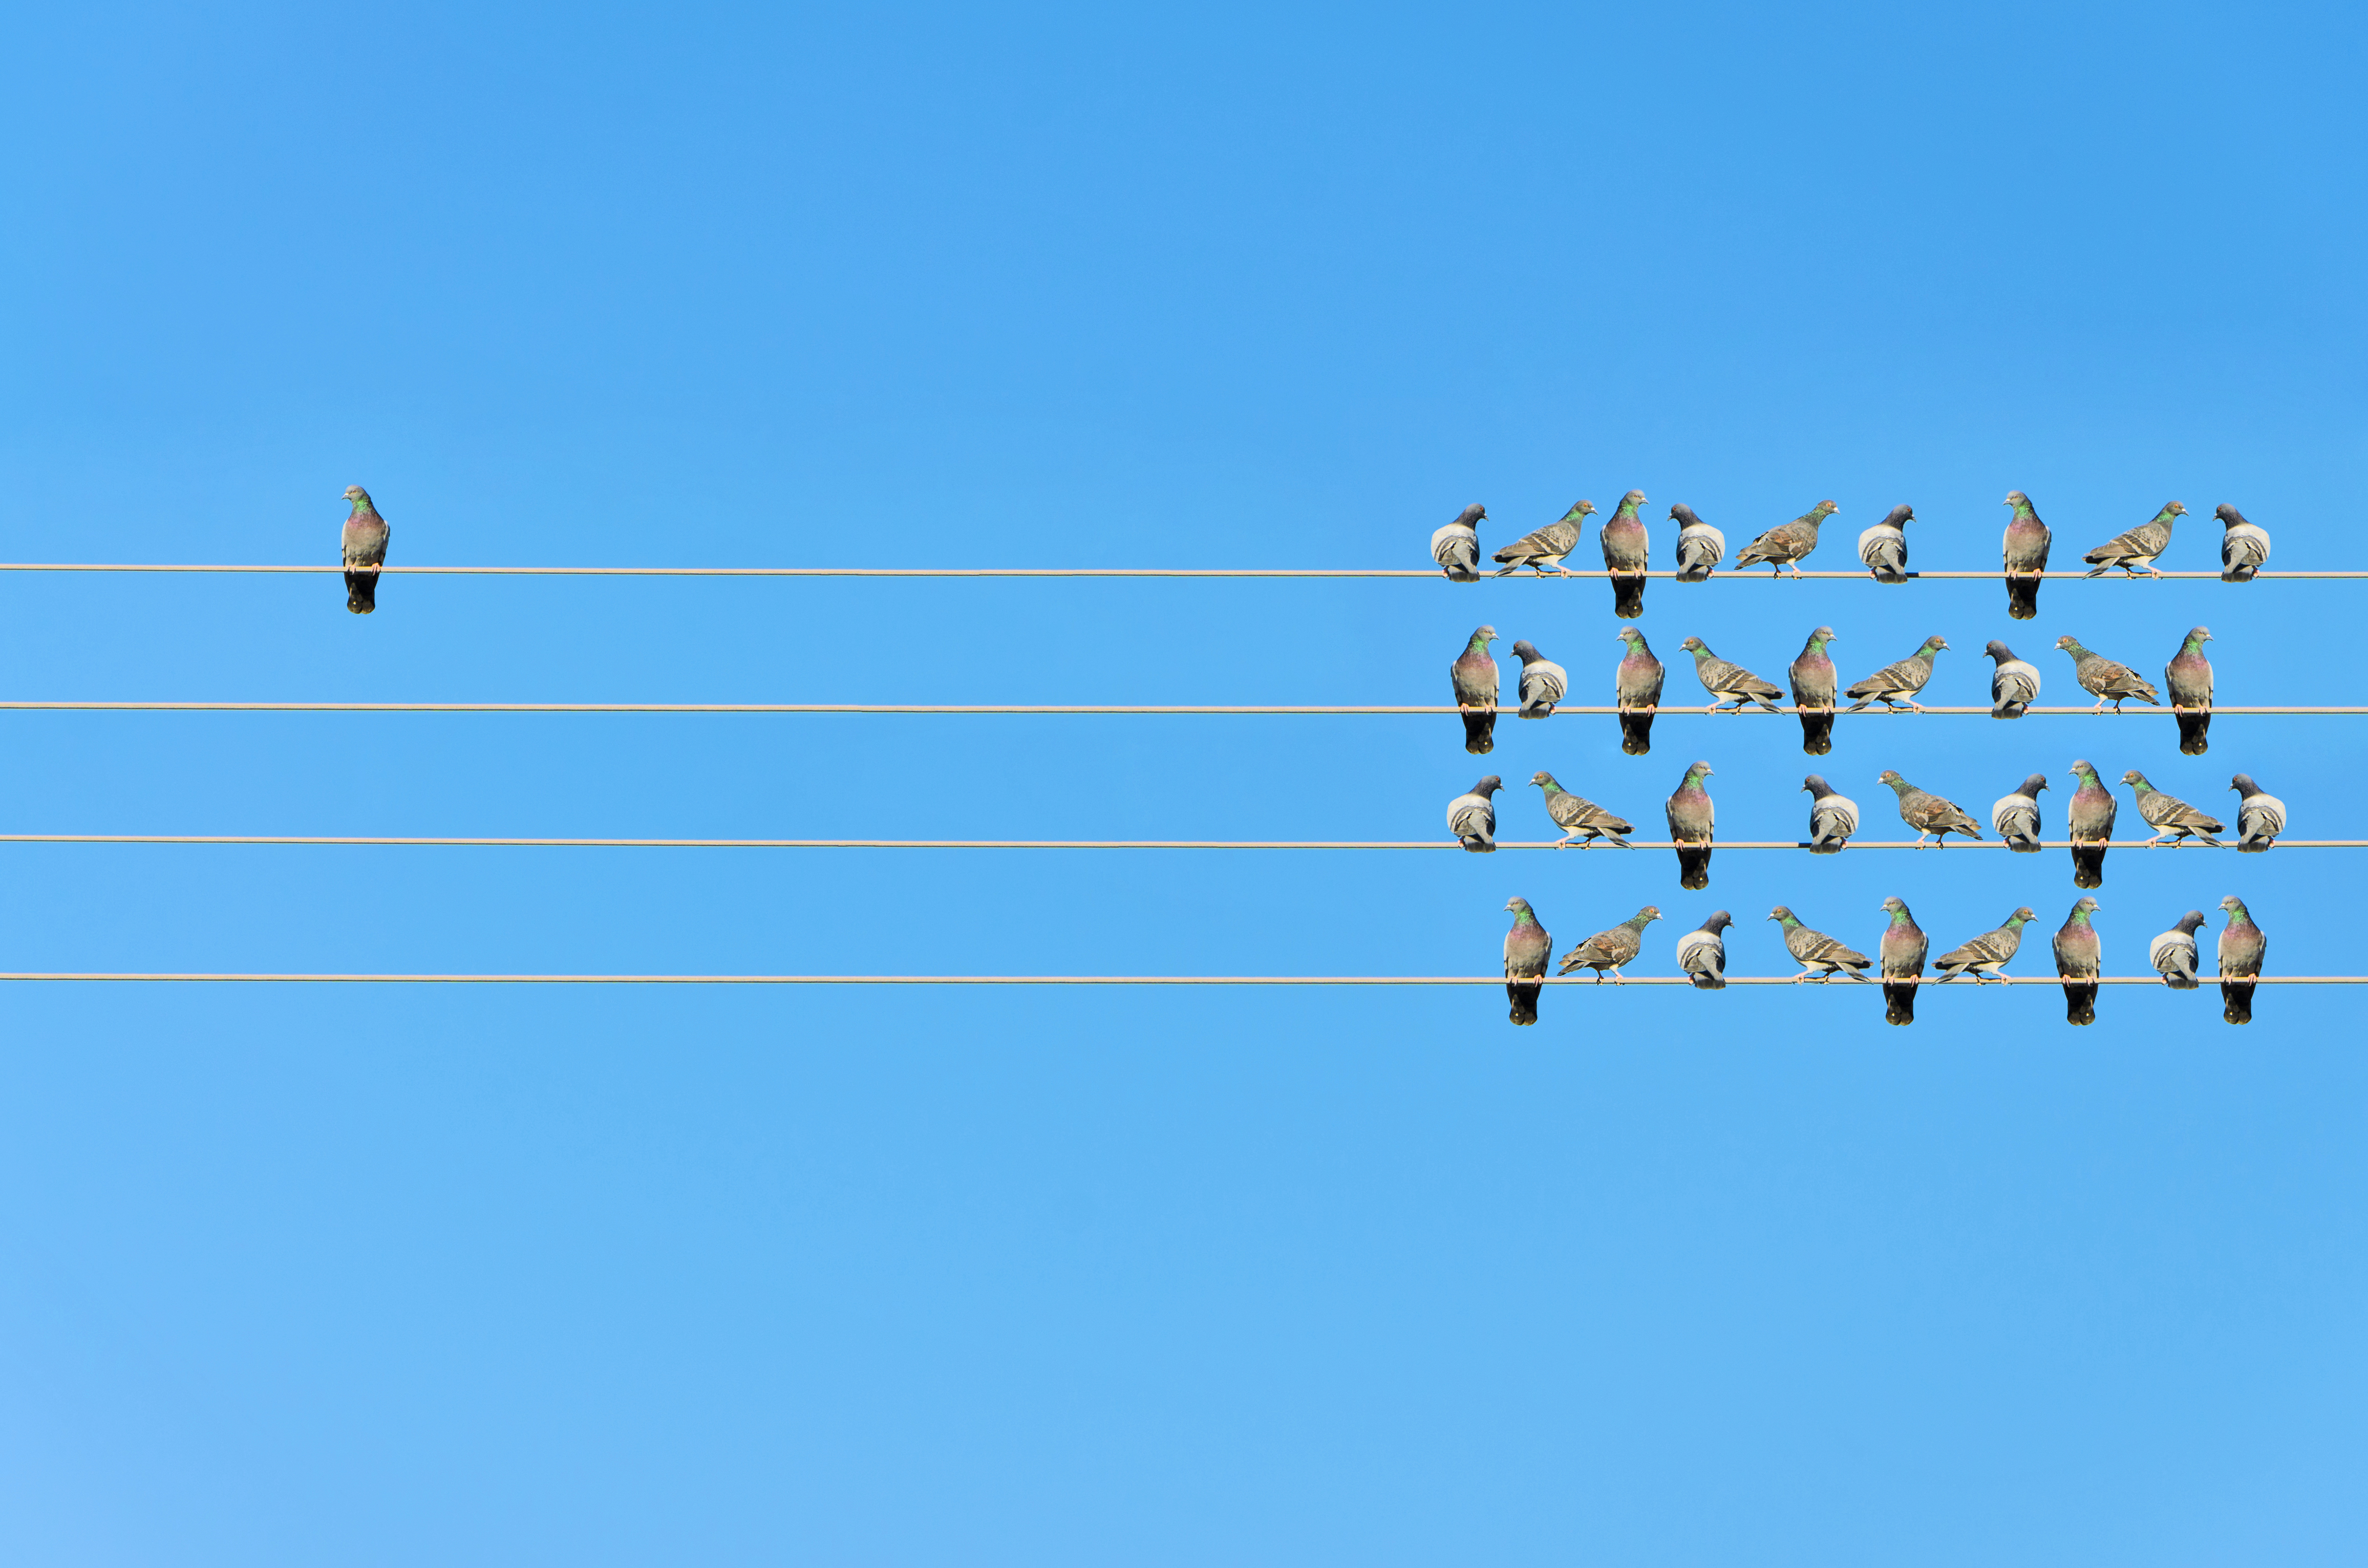 Vogelschwarm auf Stromleitungen - gegenüber ein einzelner Vogel